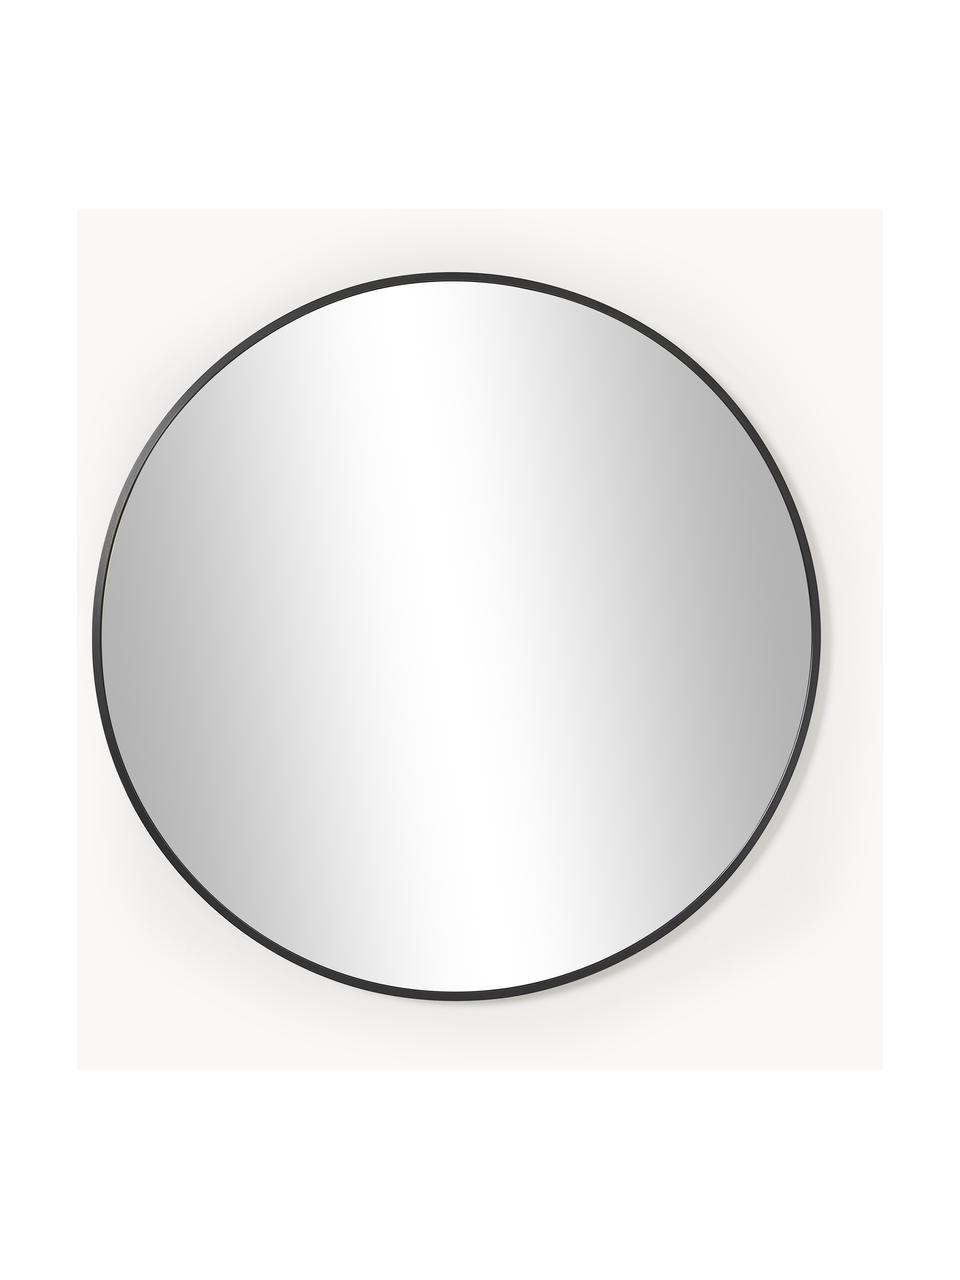 Okrągłe lustro ścienne Ida, Czarny, Ø 55 cm